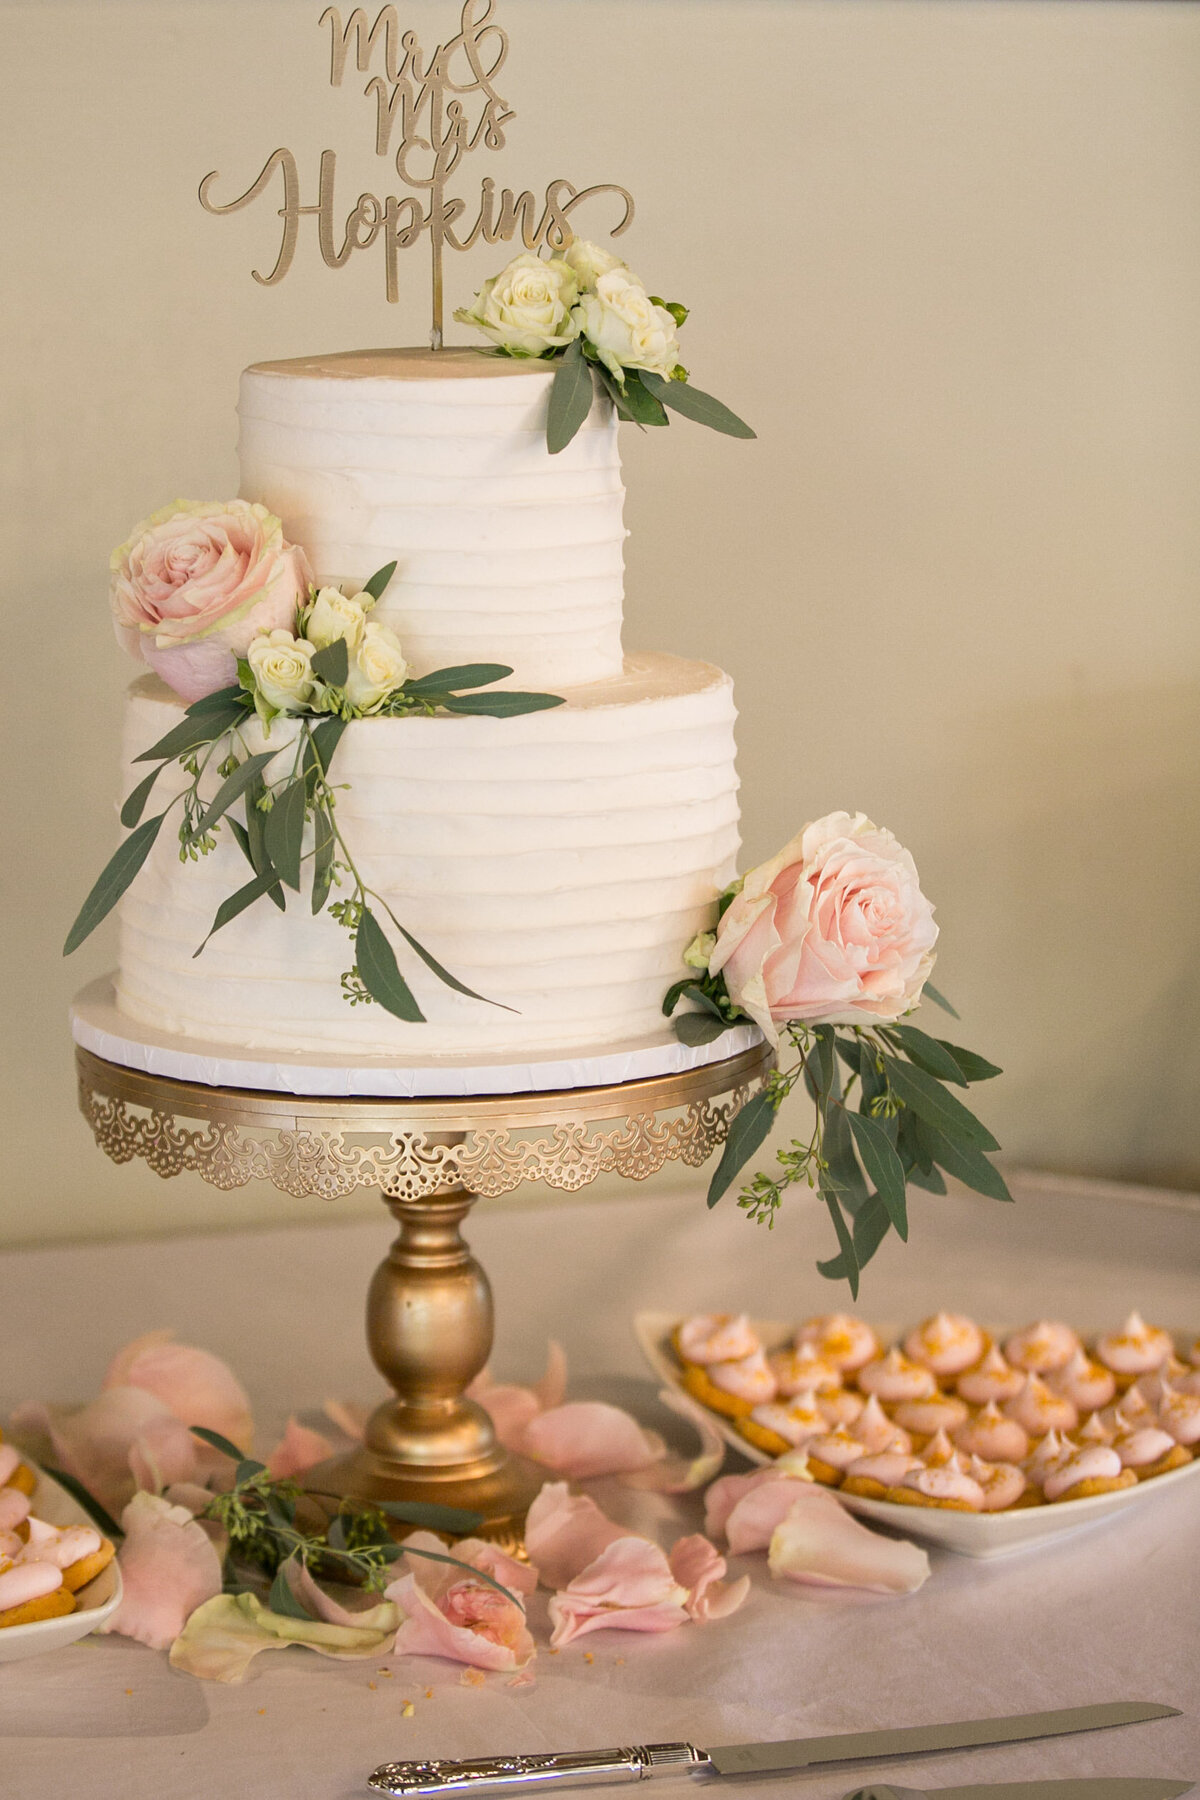 njeri-bishota-lauren-ashley-wedding-cake-pink-roses-detail-floral